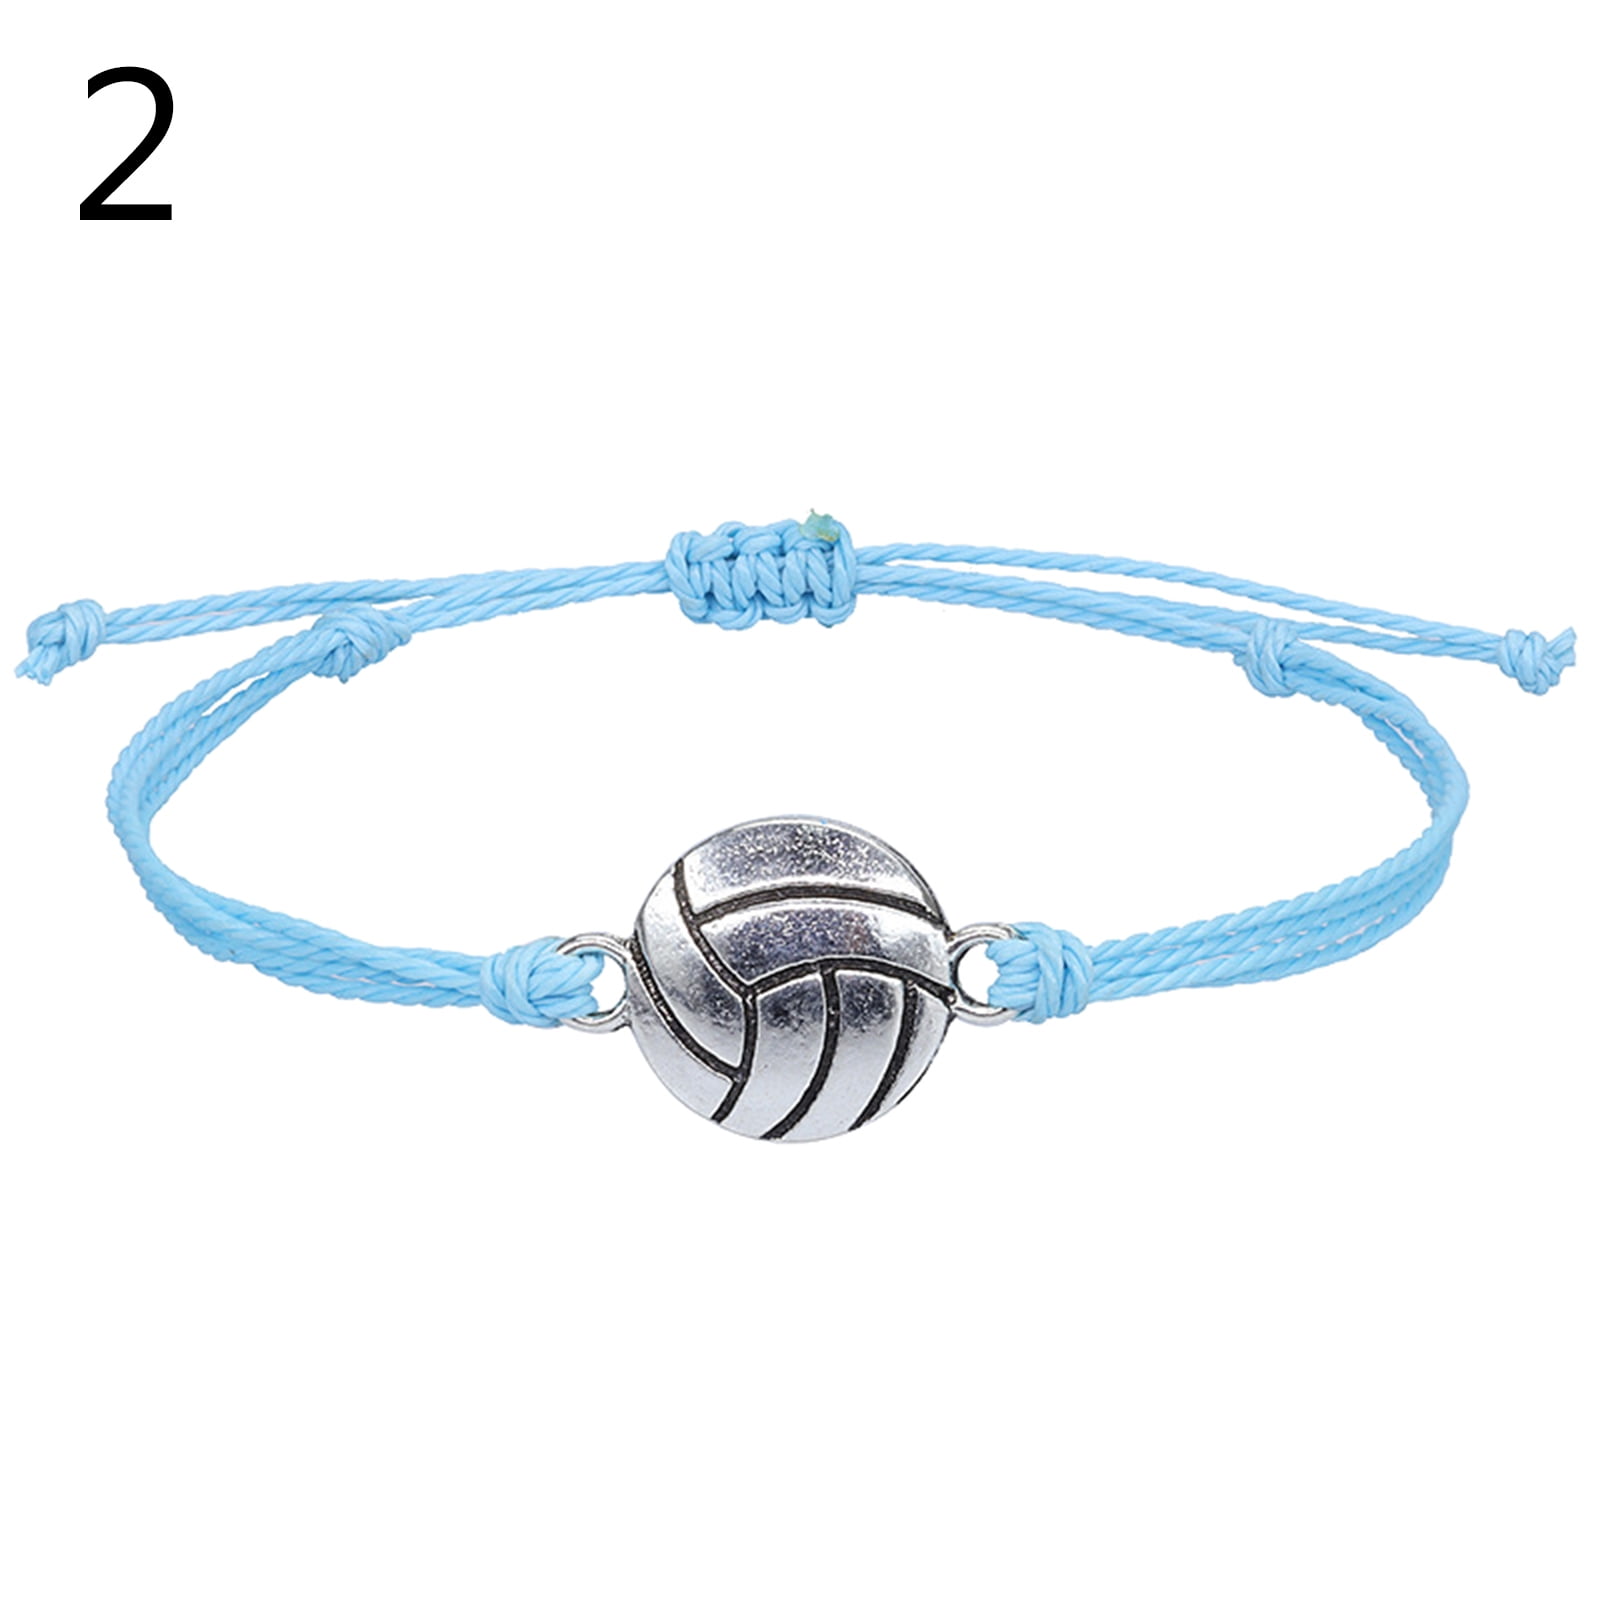 Bracelet de volley-ball ajustable, breloque en alliage, pour garçon et  fille, cadeau pour adolescent, ficelle tissée à la main, Olive, sport